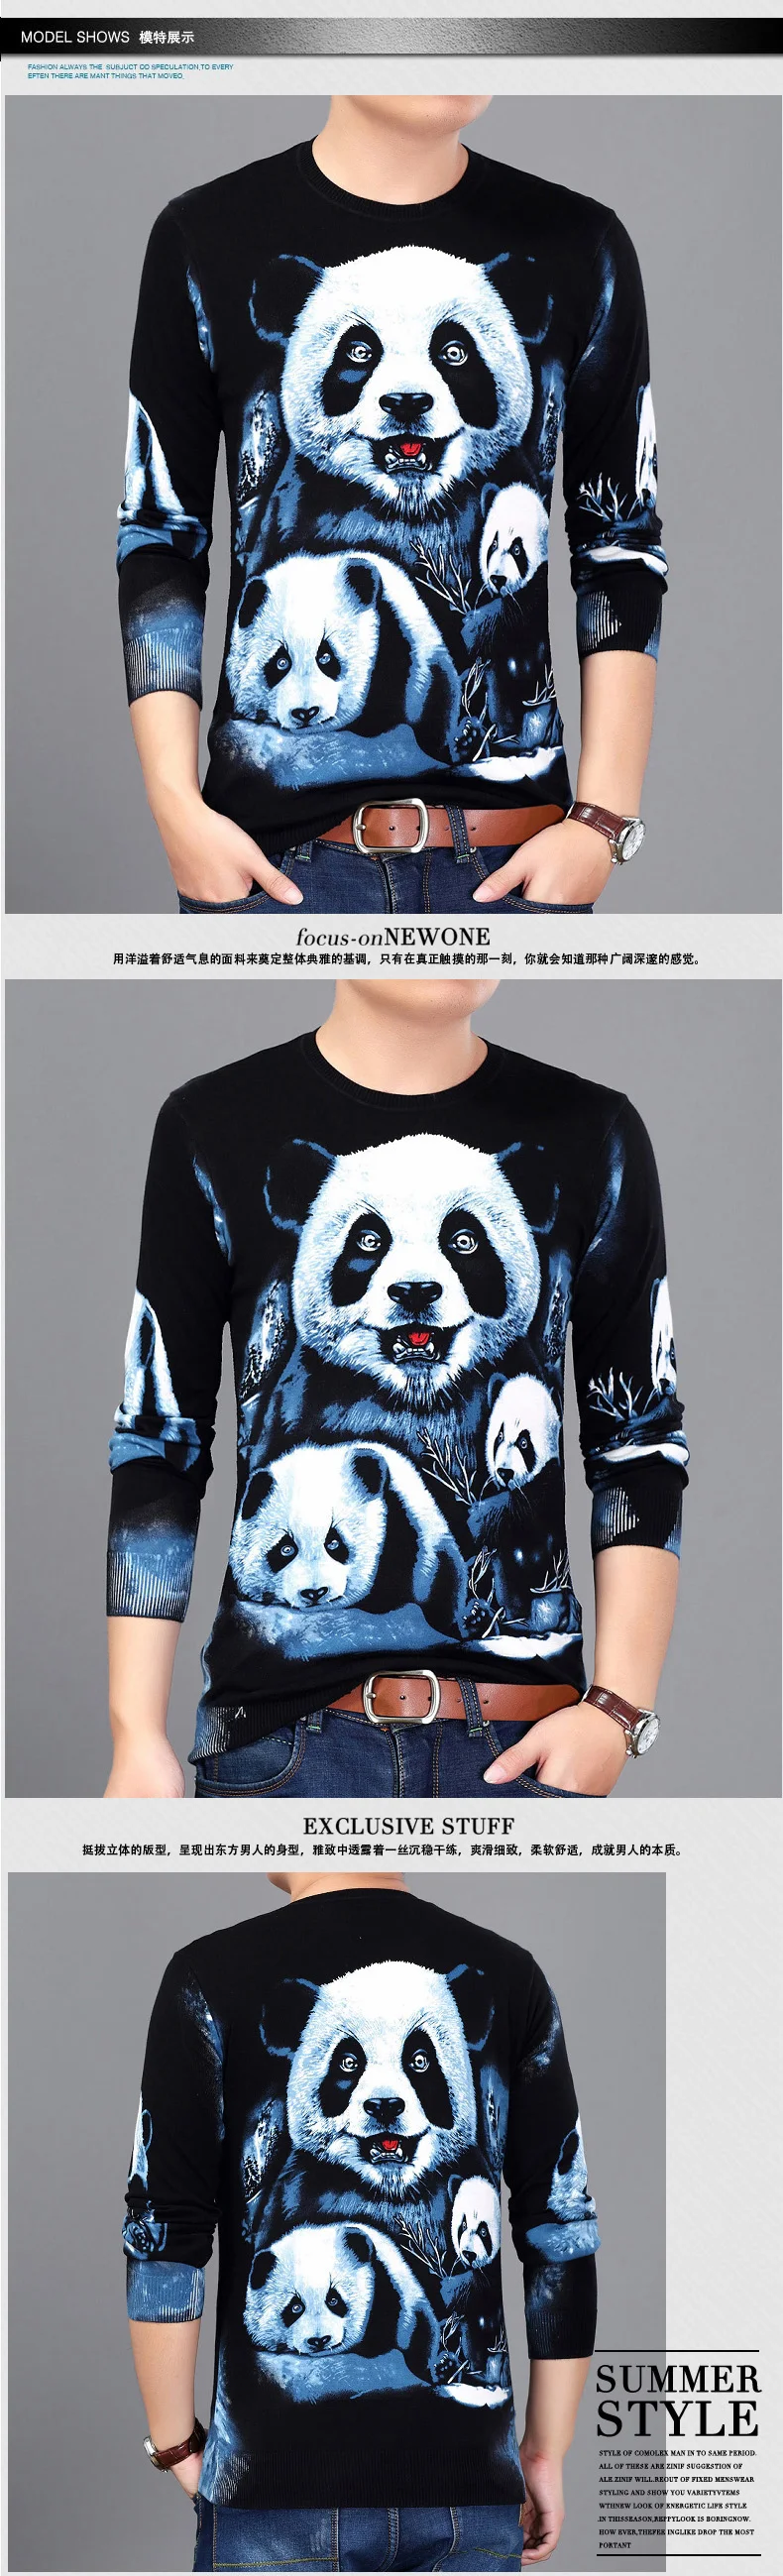 Китайский стиль, 3D рисунок панды, Модный повседневный вязаный свитер, осень 2017, мягкий и шелковистый качественный свитер для мужчин M-3XL